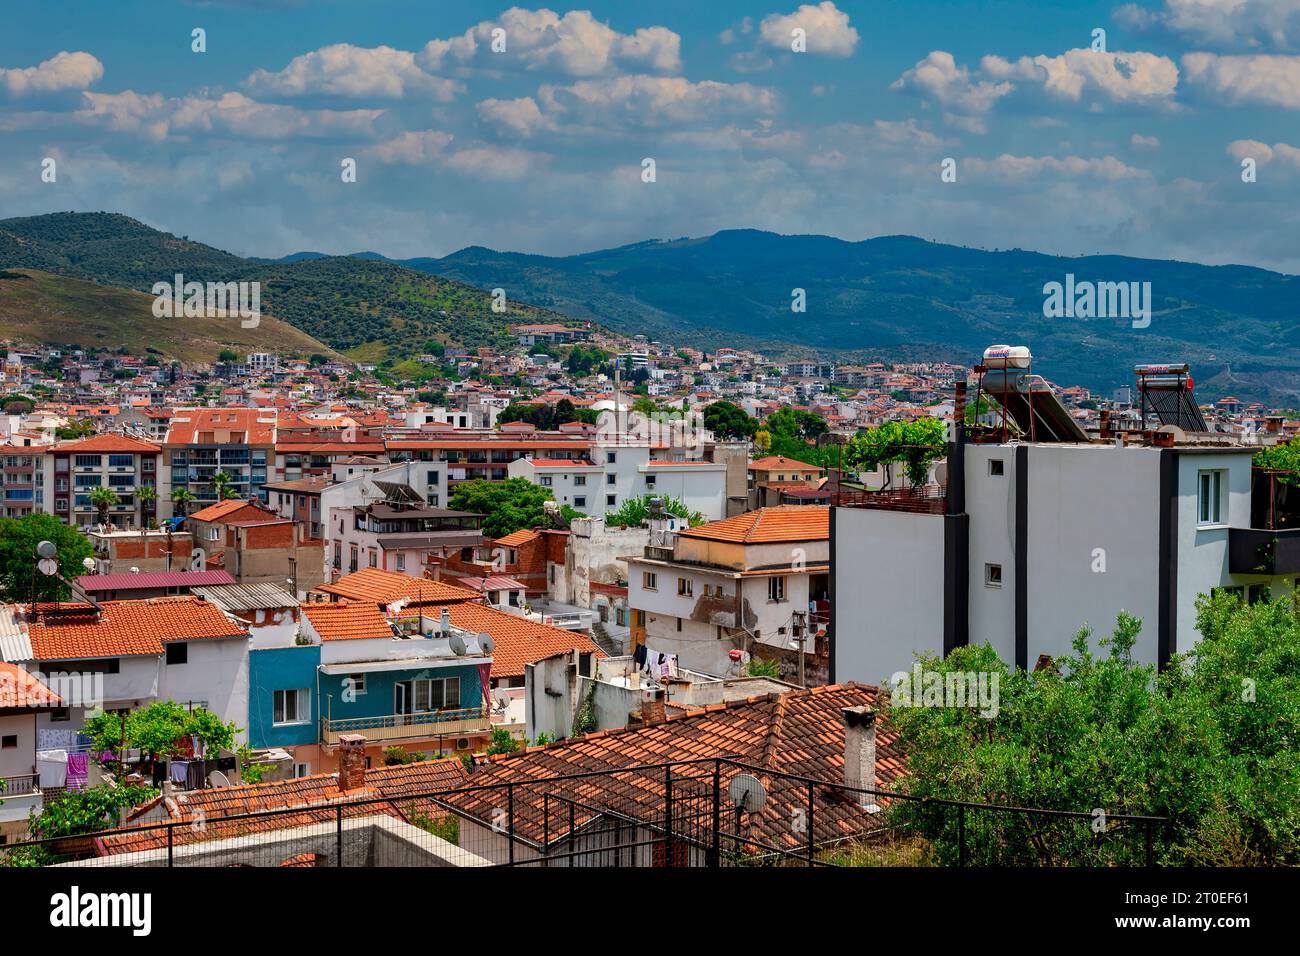 Vue de Citadelle et de la ville antique de Selcuk, Izmir, Turquie Banque D'Images